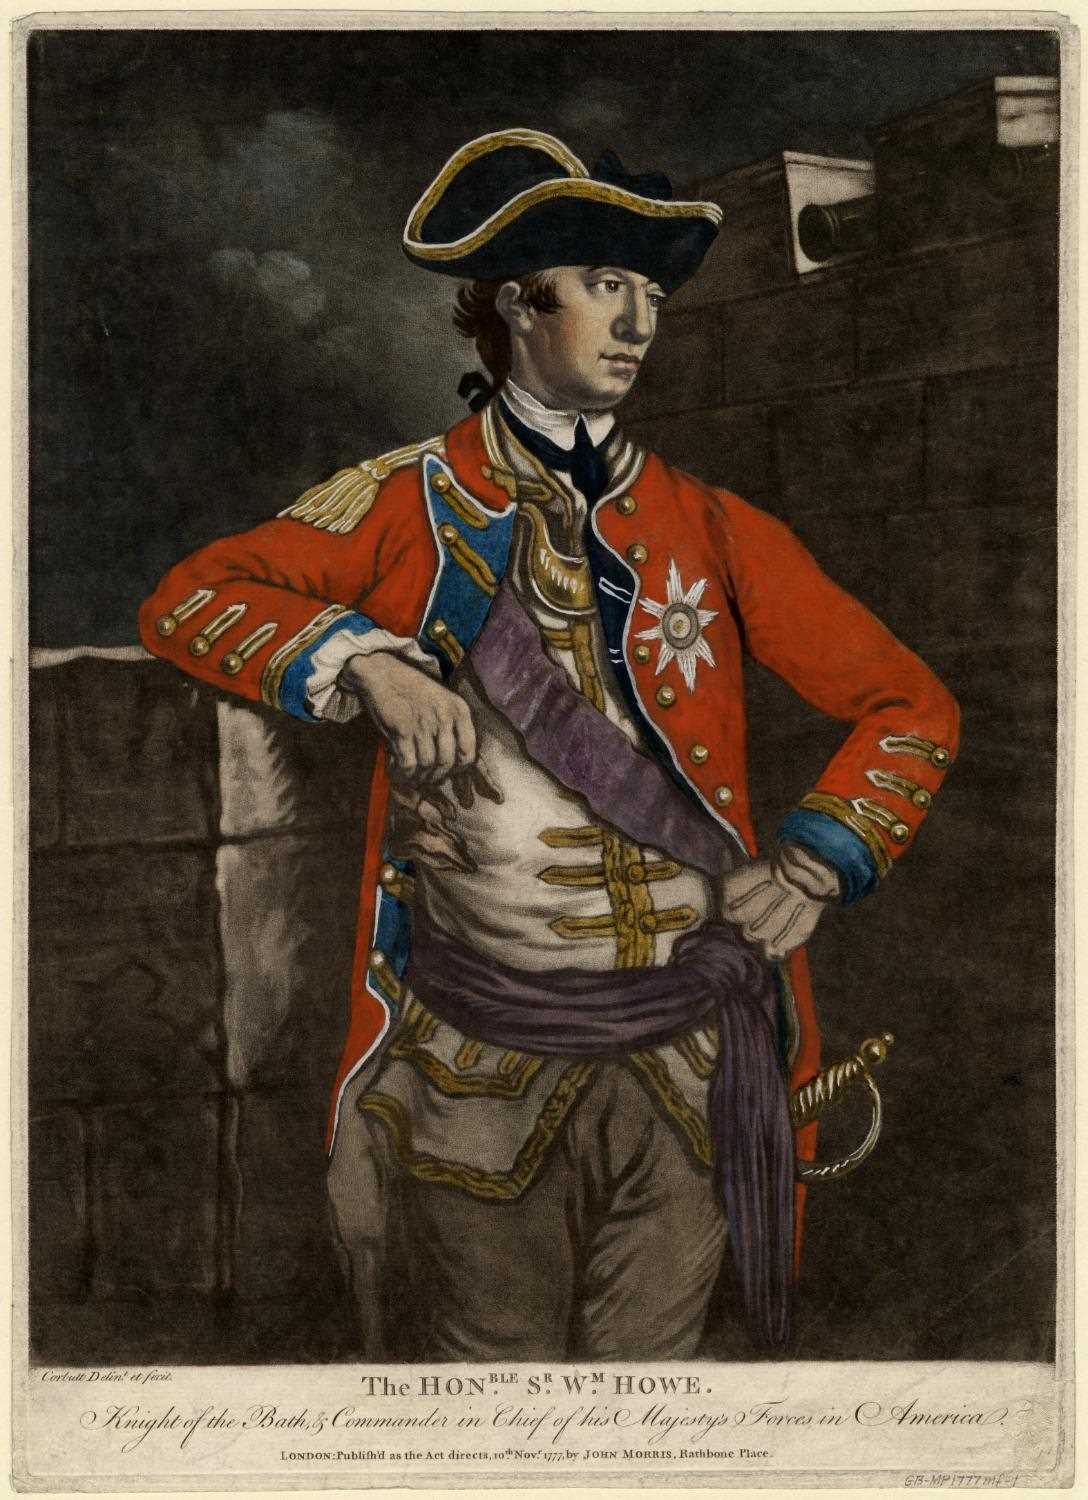 General William Howe